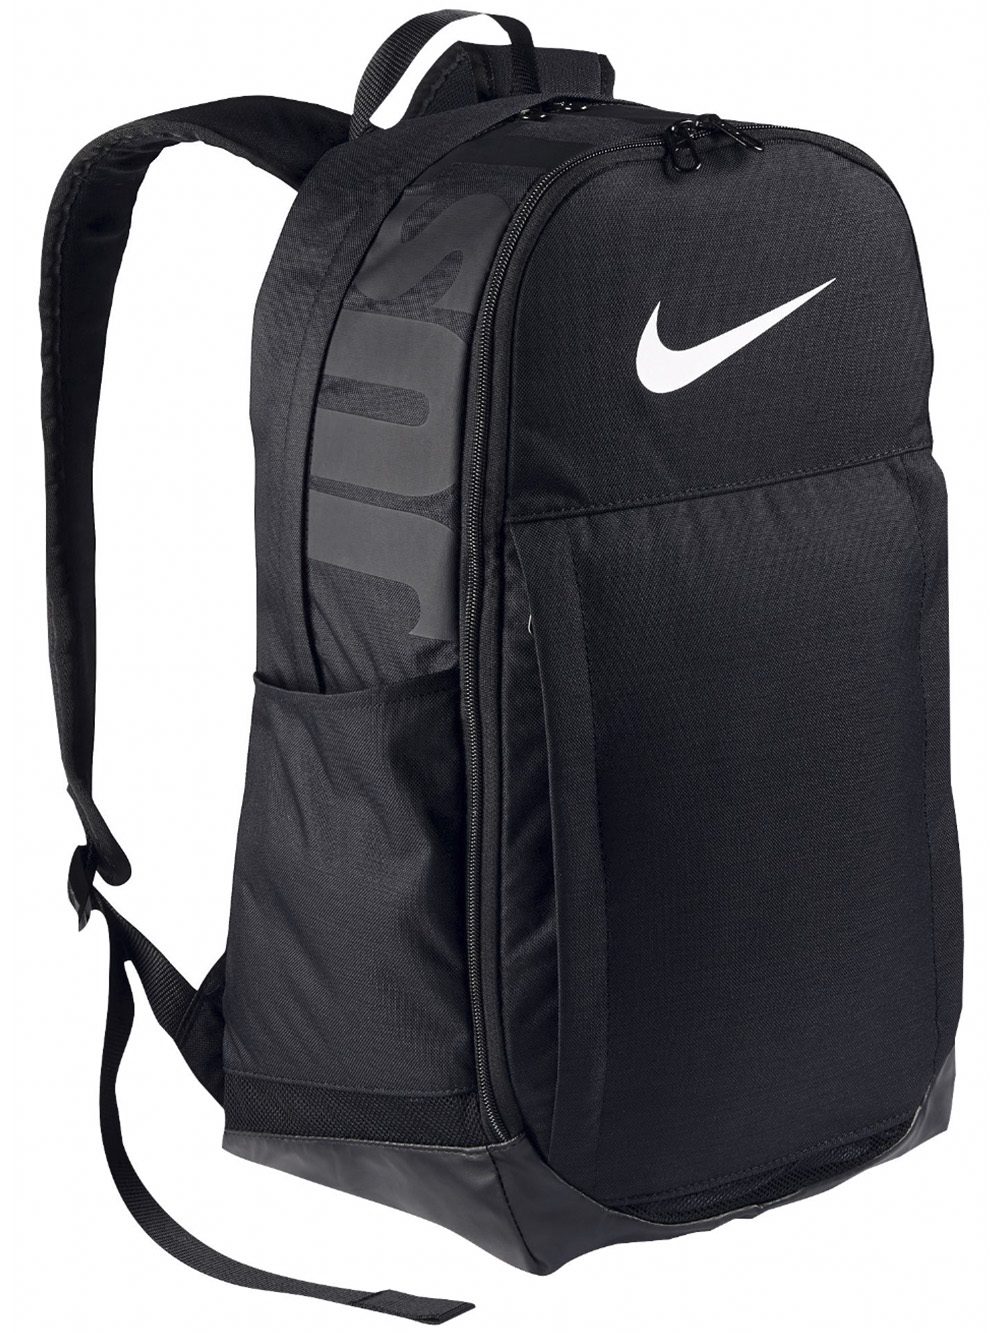 nike brasilia backpack black